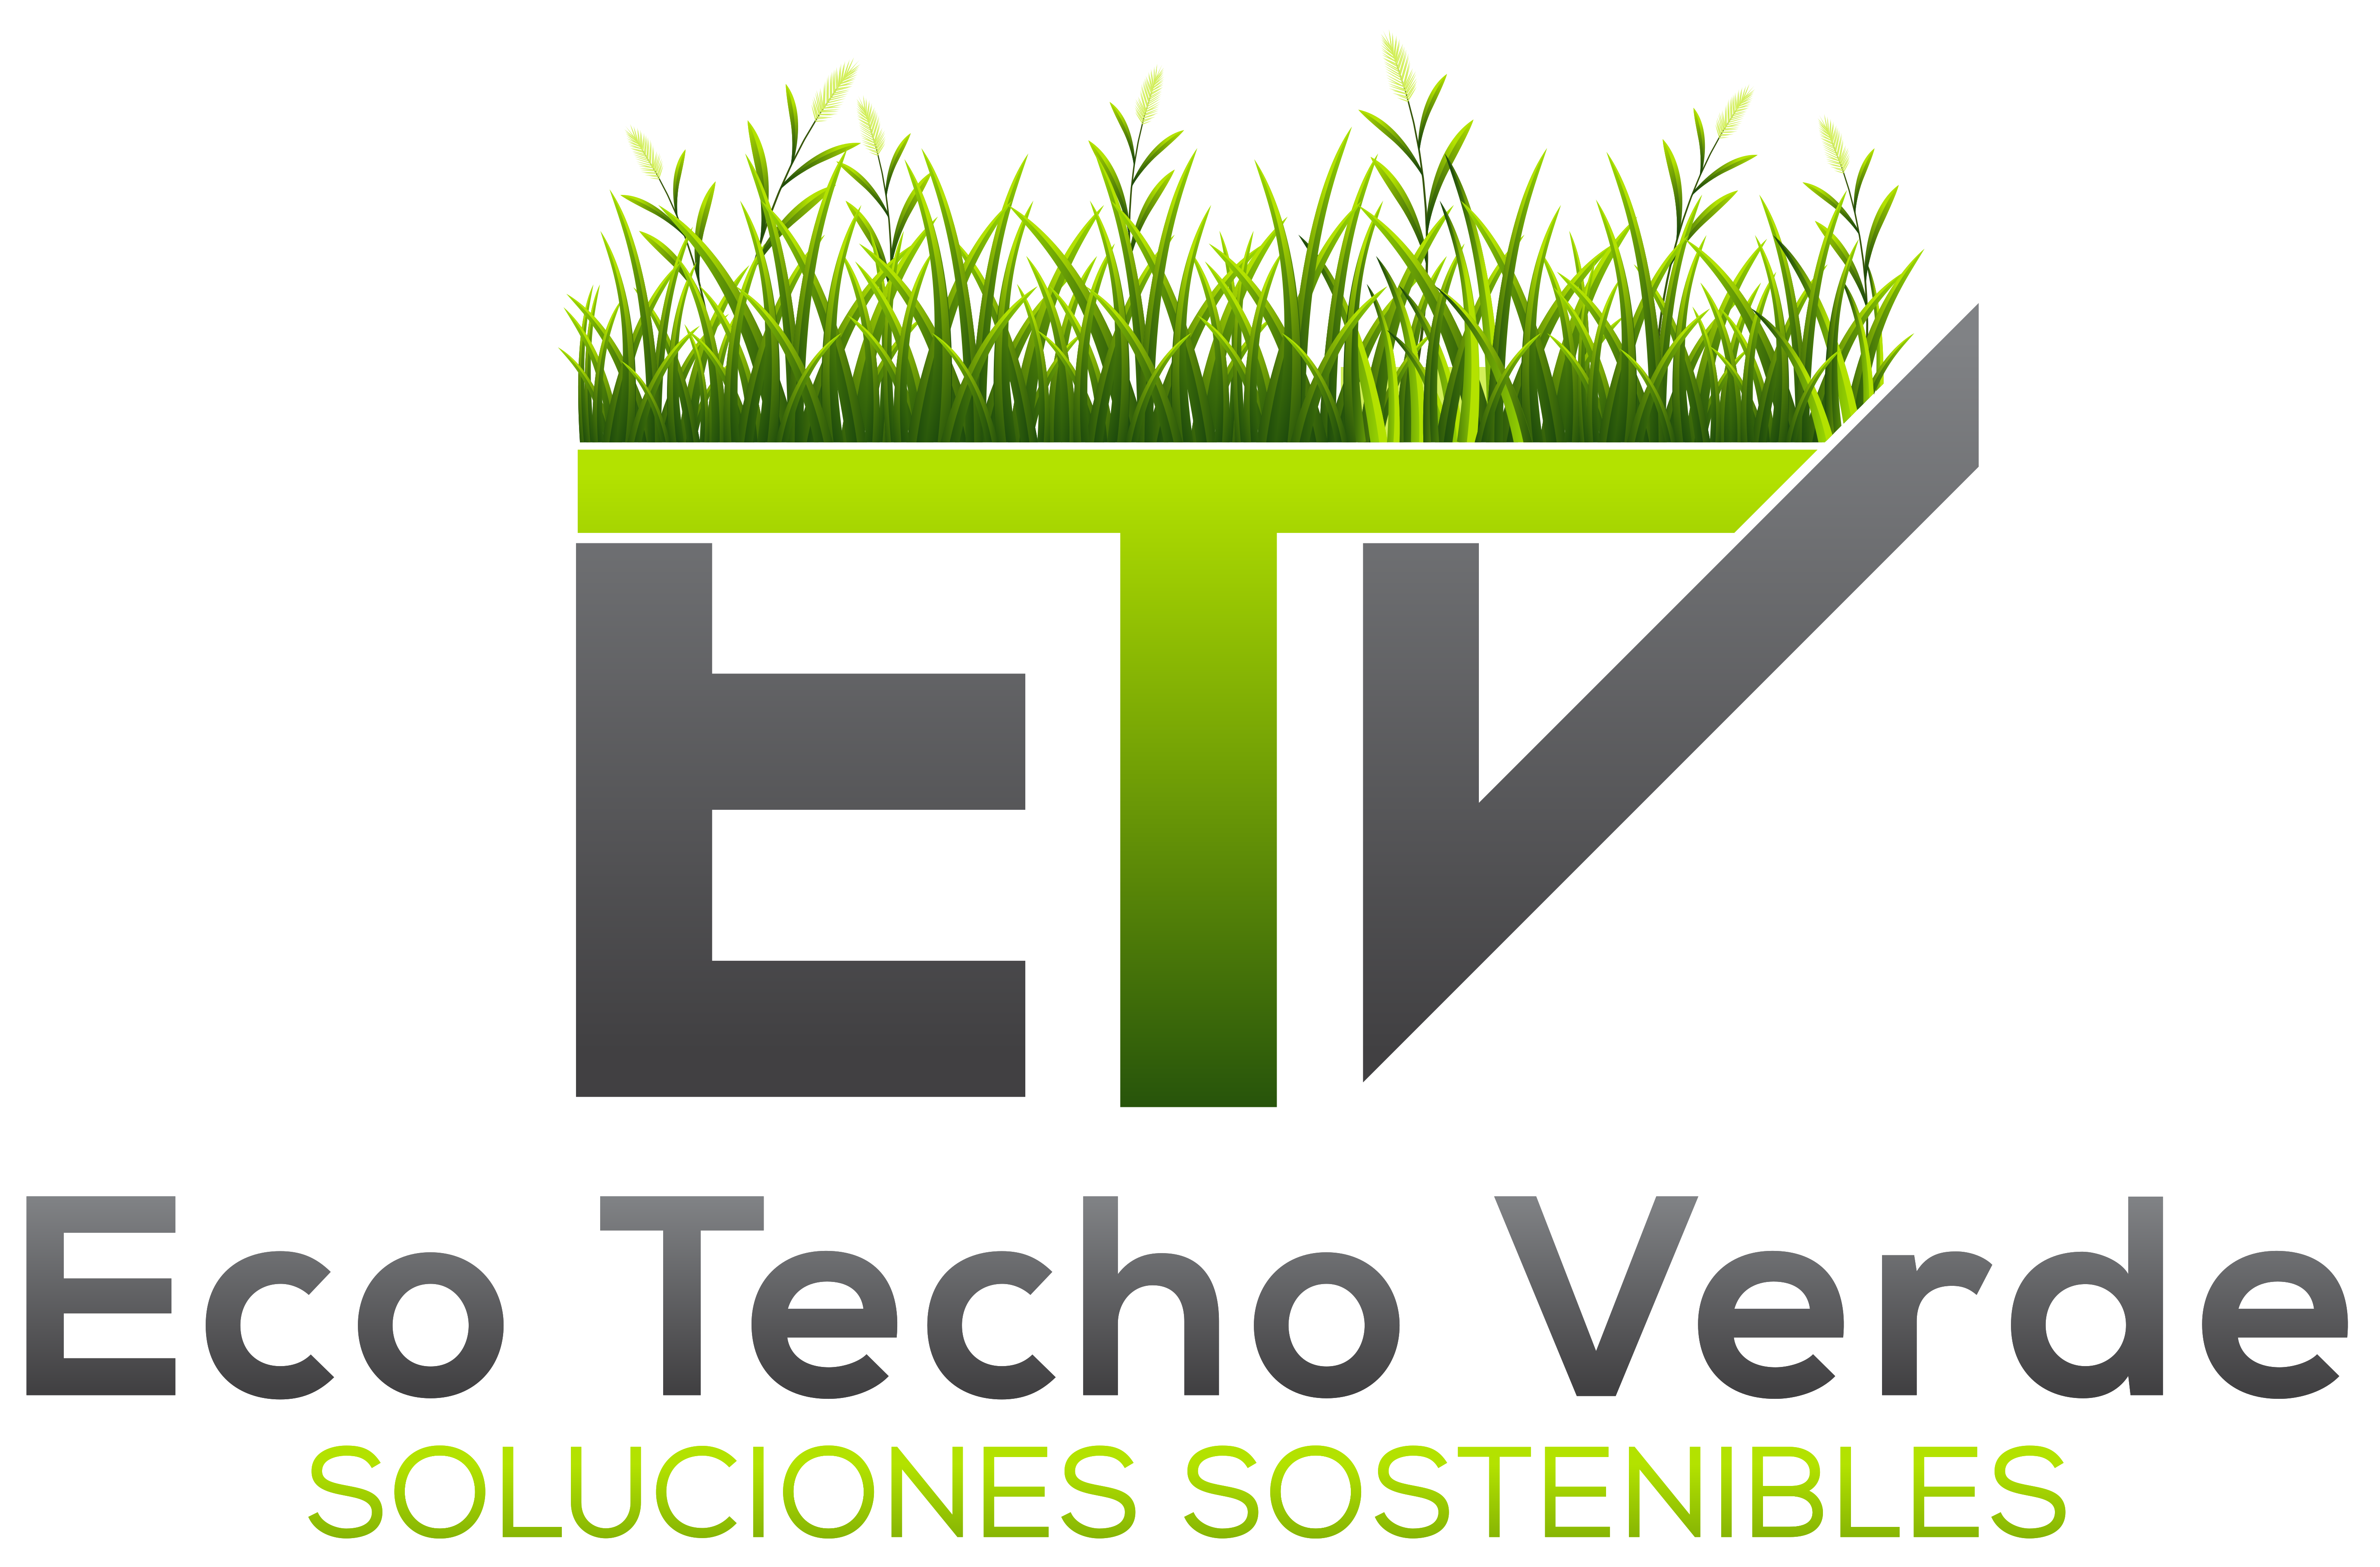 Eco Techo Verde